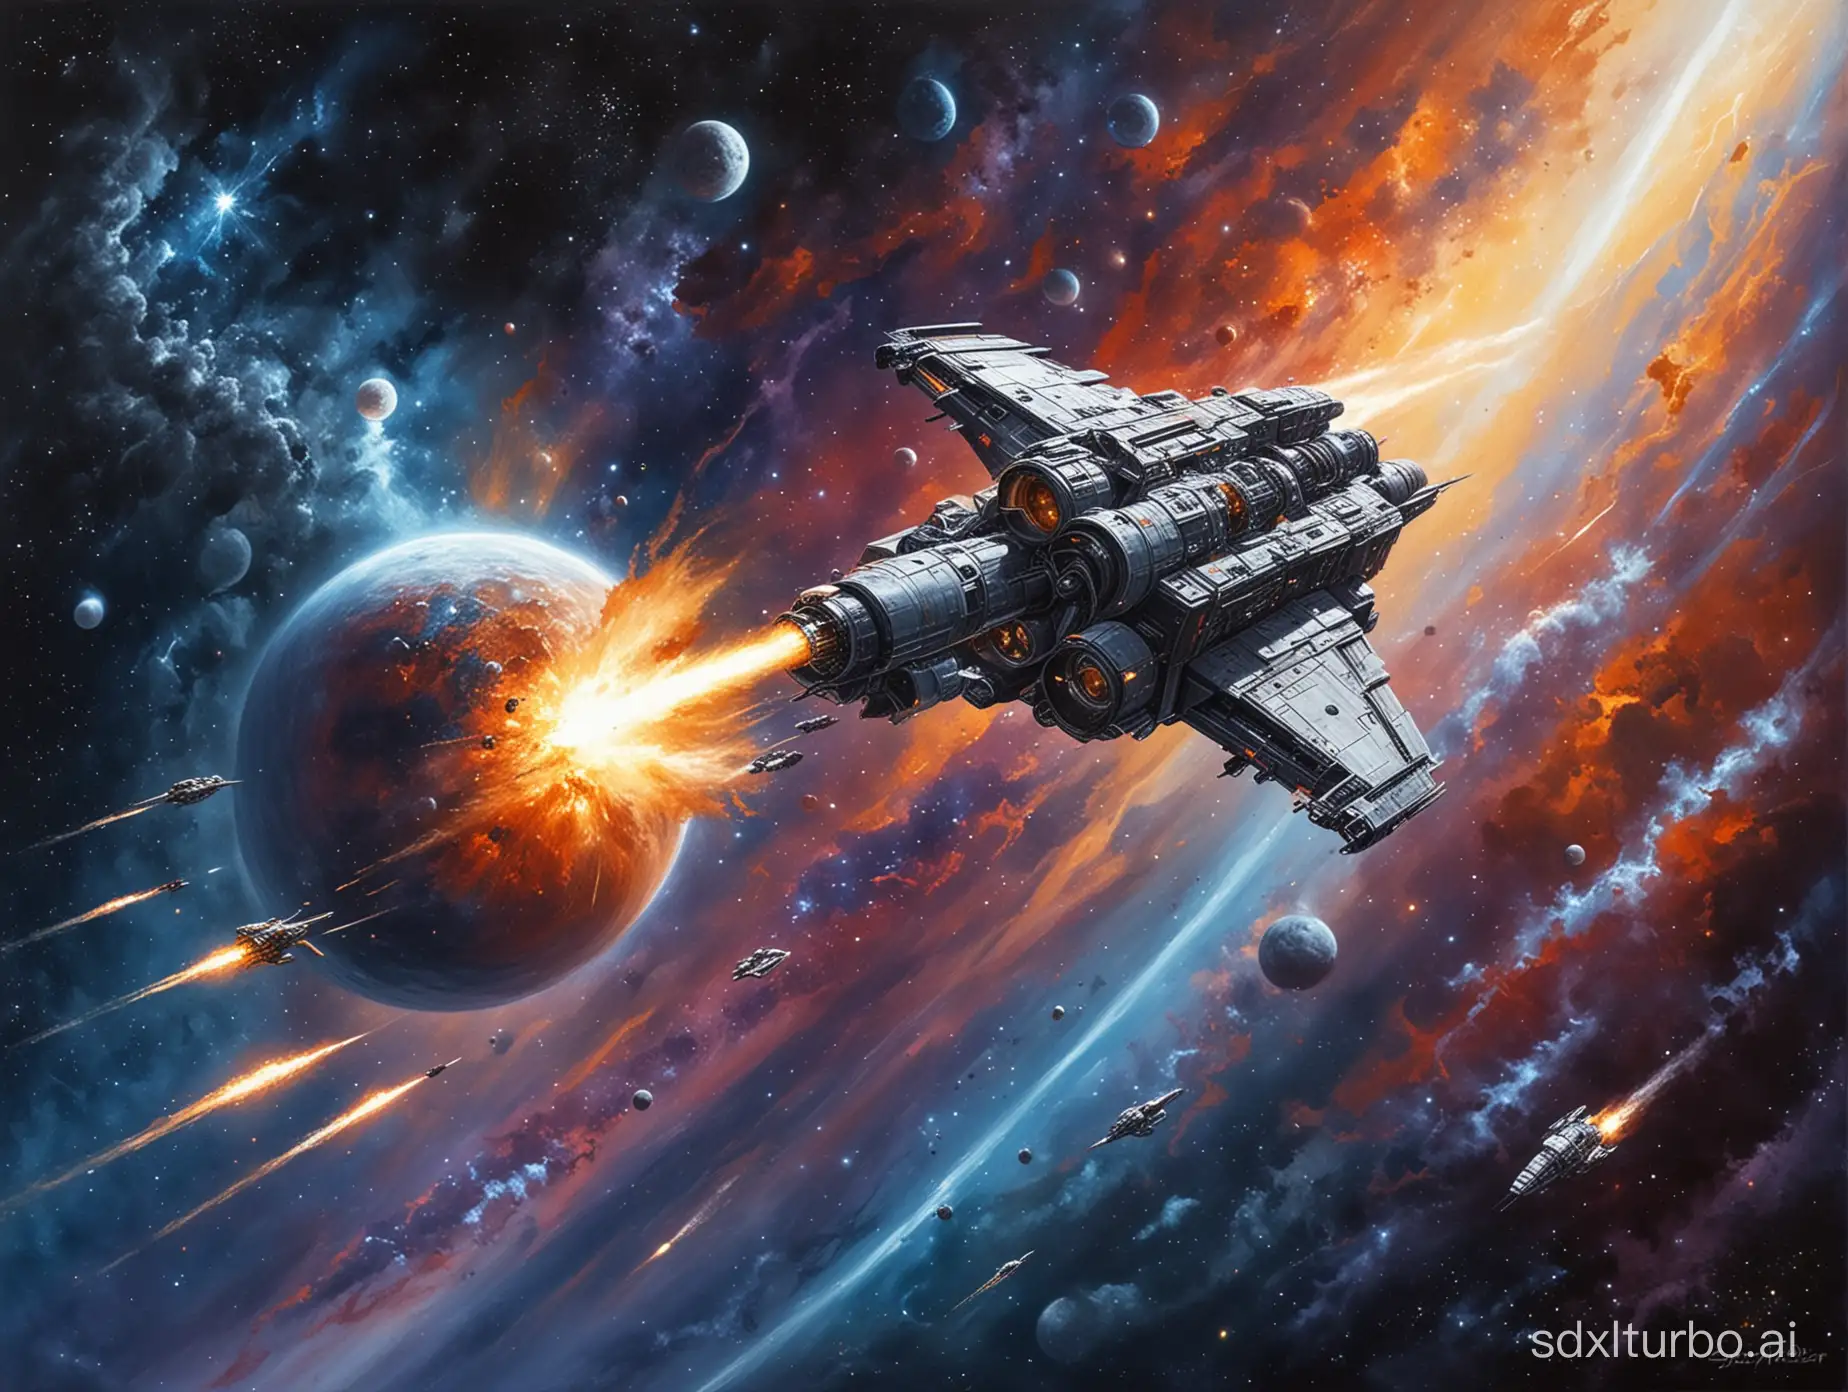 Epic-Space-Adventure-Art-Futuristic-Spacecraft-Exploring-Cosmic-Wonders